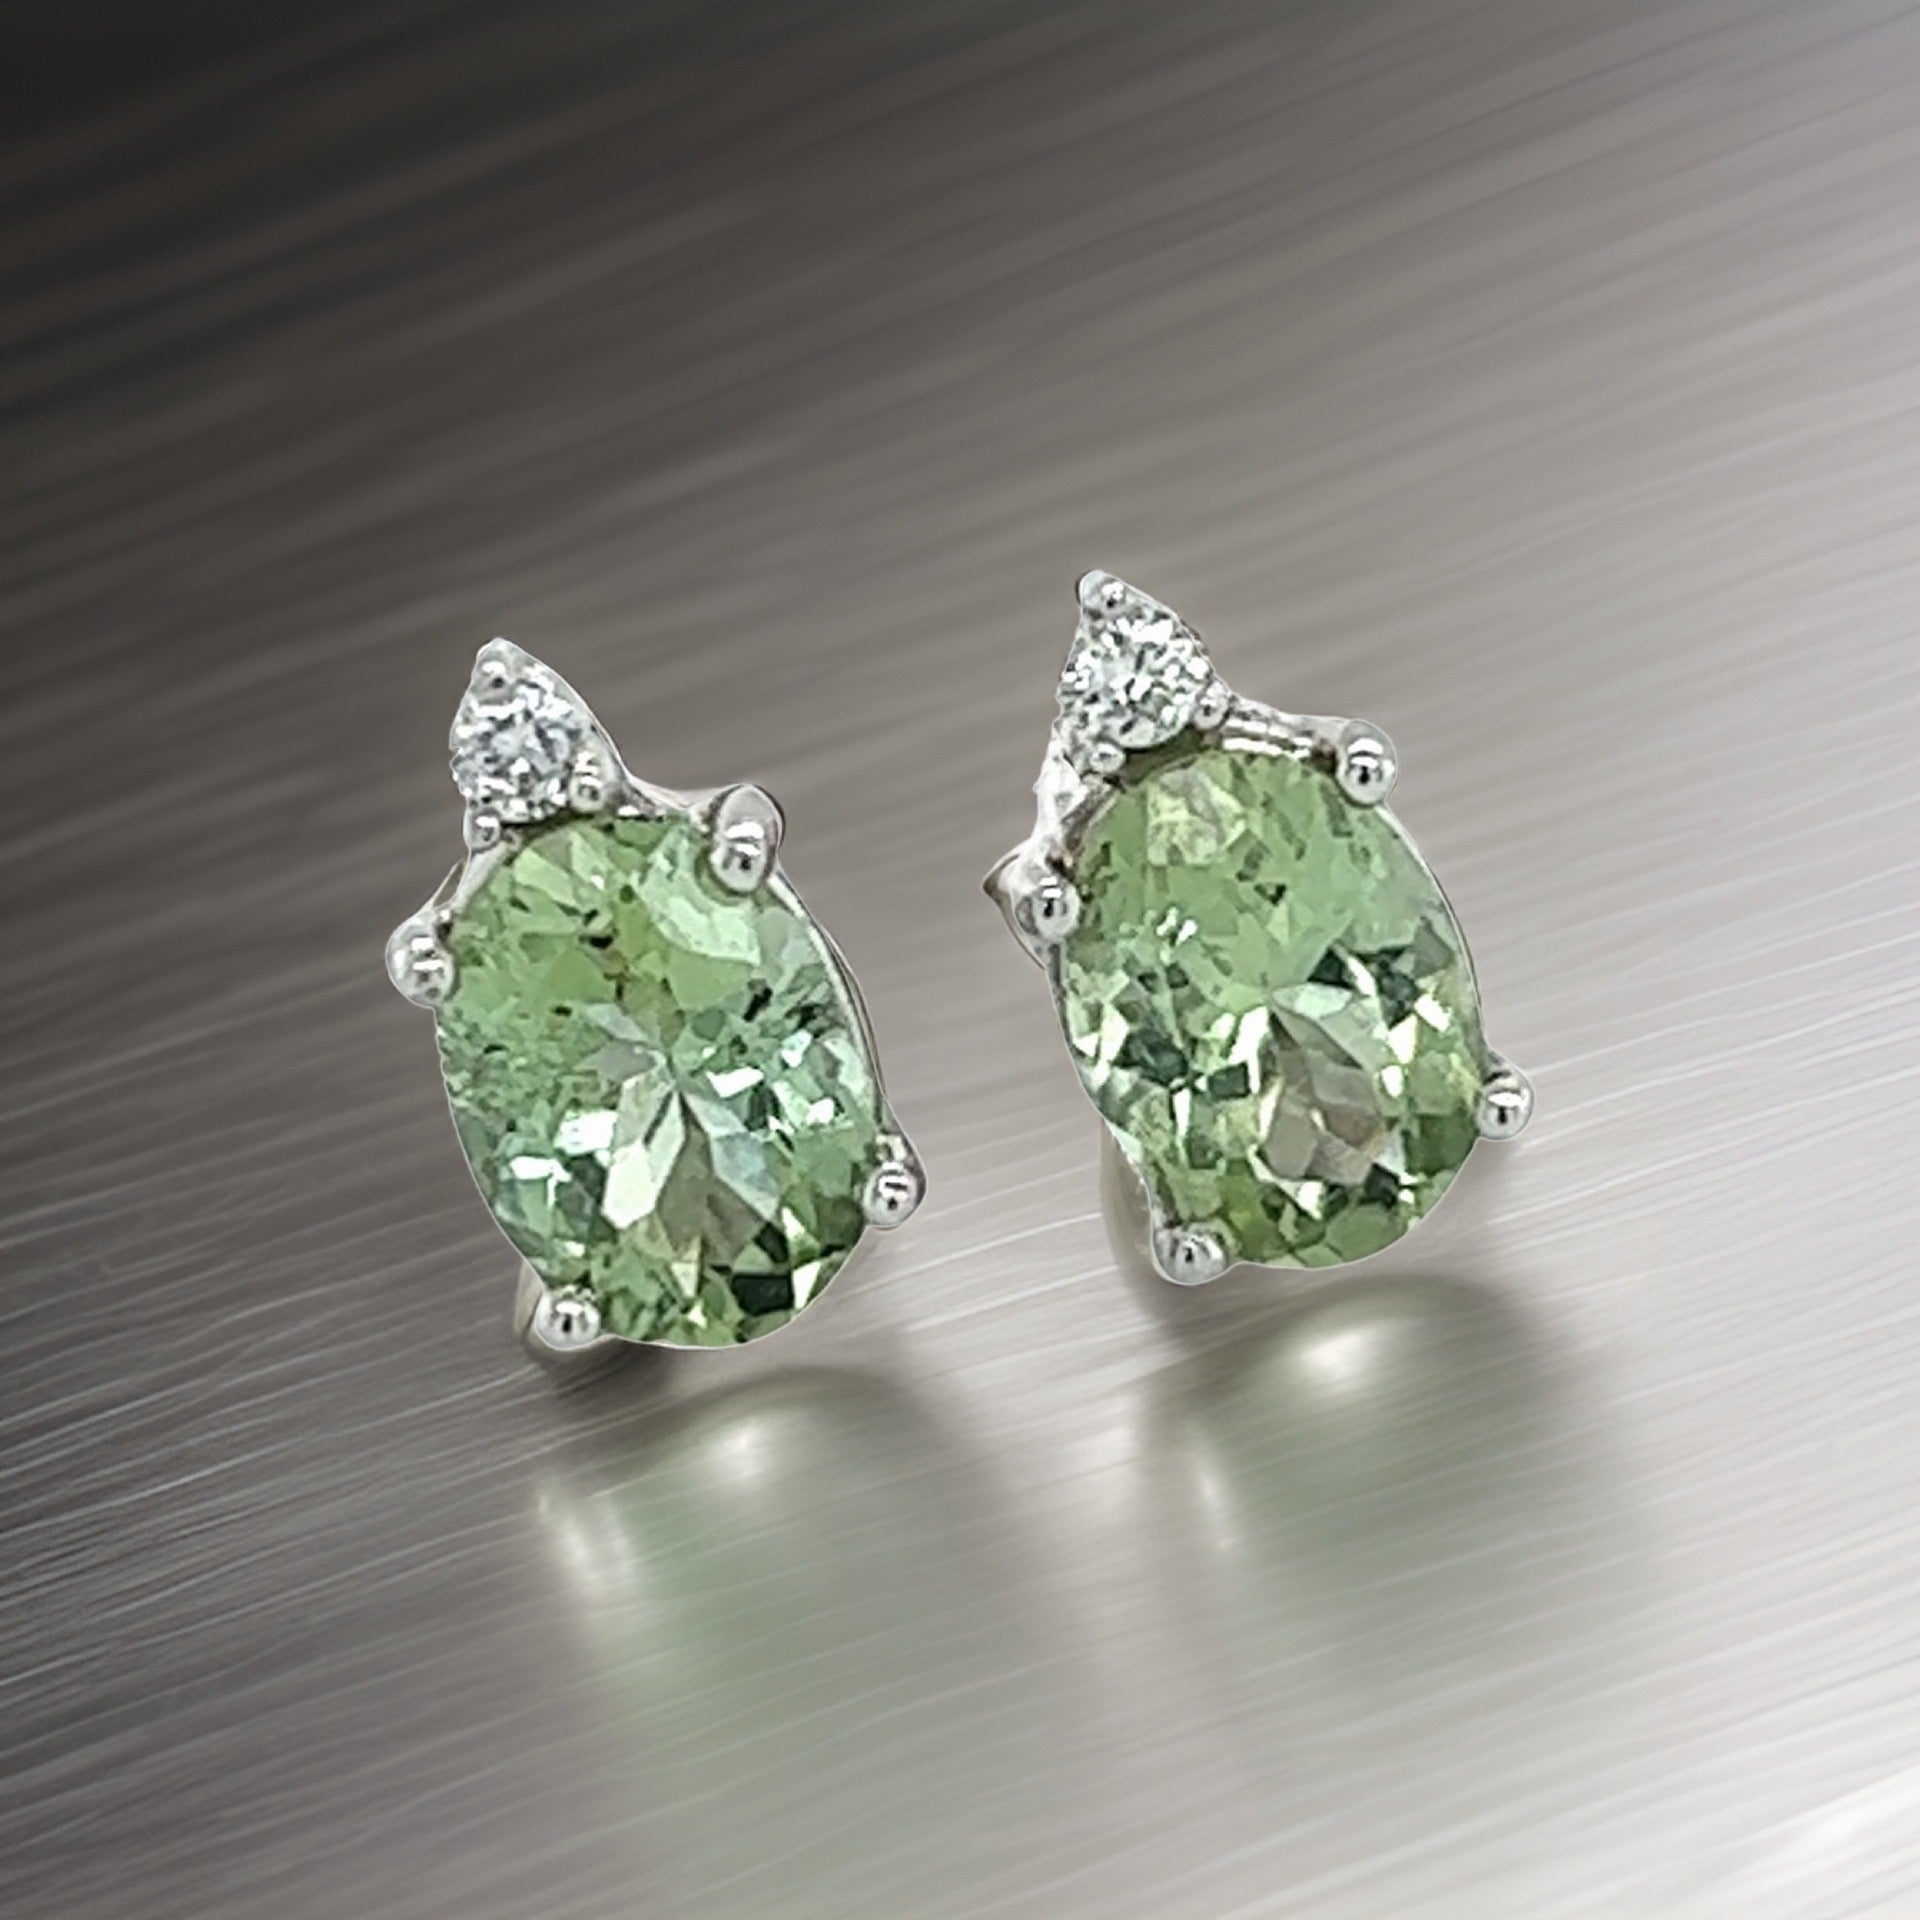 Natural Tourmaline Diamond Stud Earrings 14k Y Gold 1.76 TCW Certified $1,690 121433 - Certified Fine Jewelry